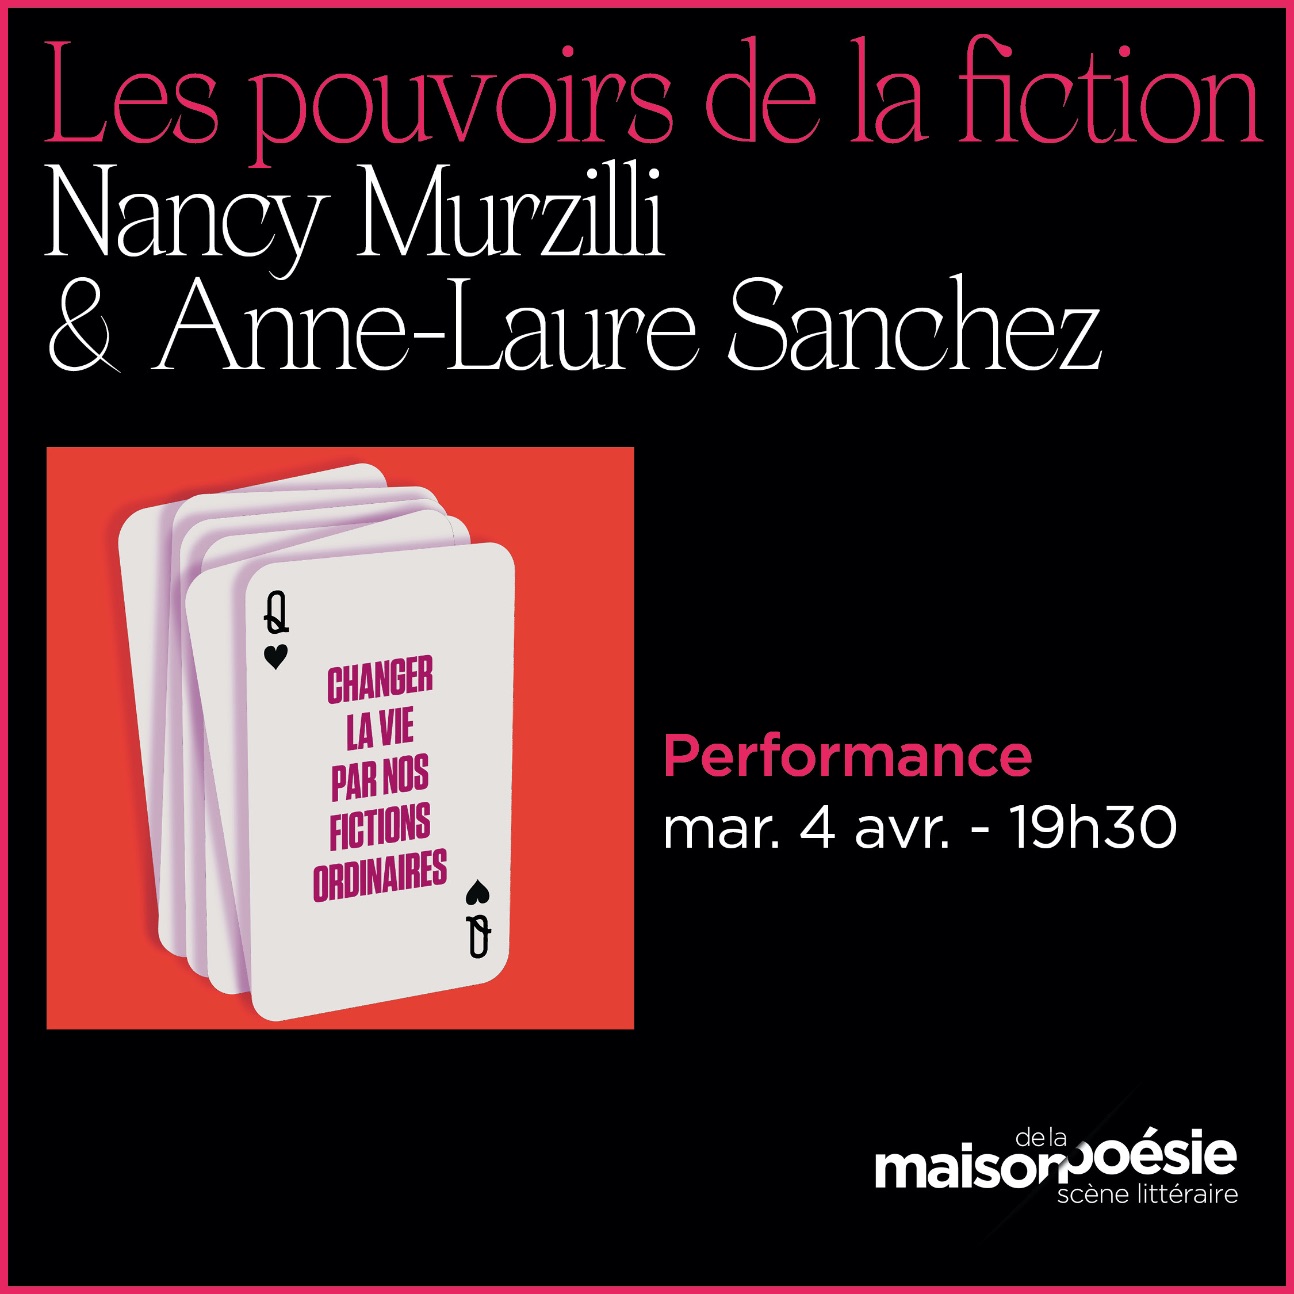 Les pouvoirs de la fiction. Conférence-performance avec Nancy Murzilli & Anne-Laure Sanchez (Maison de la Poésie, Paris)